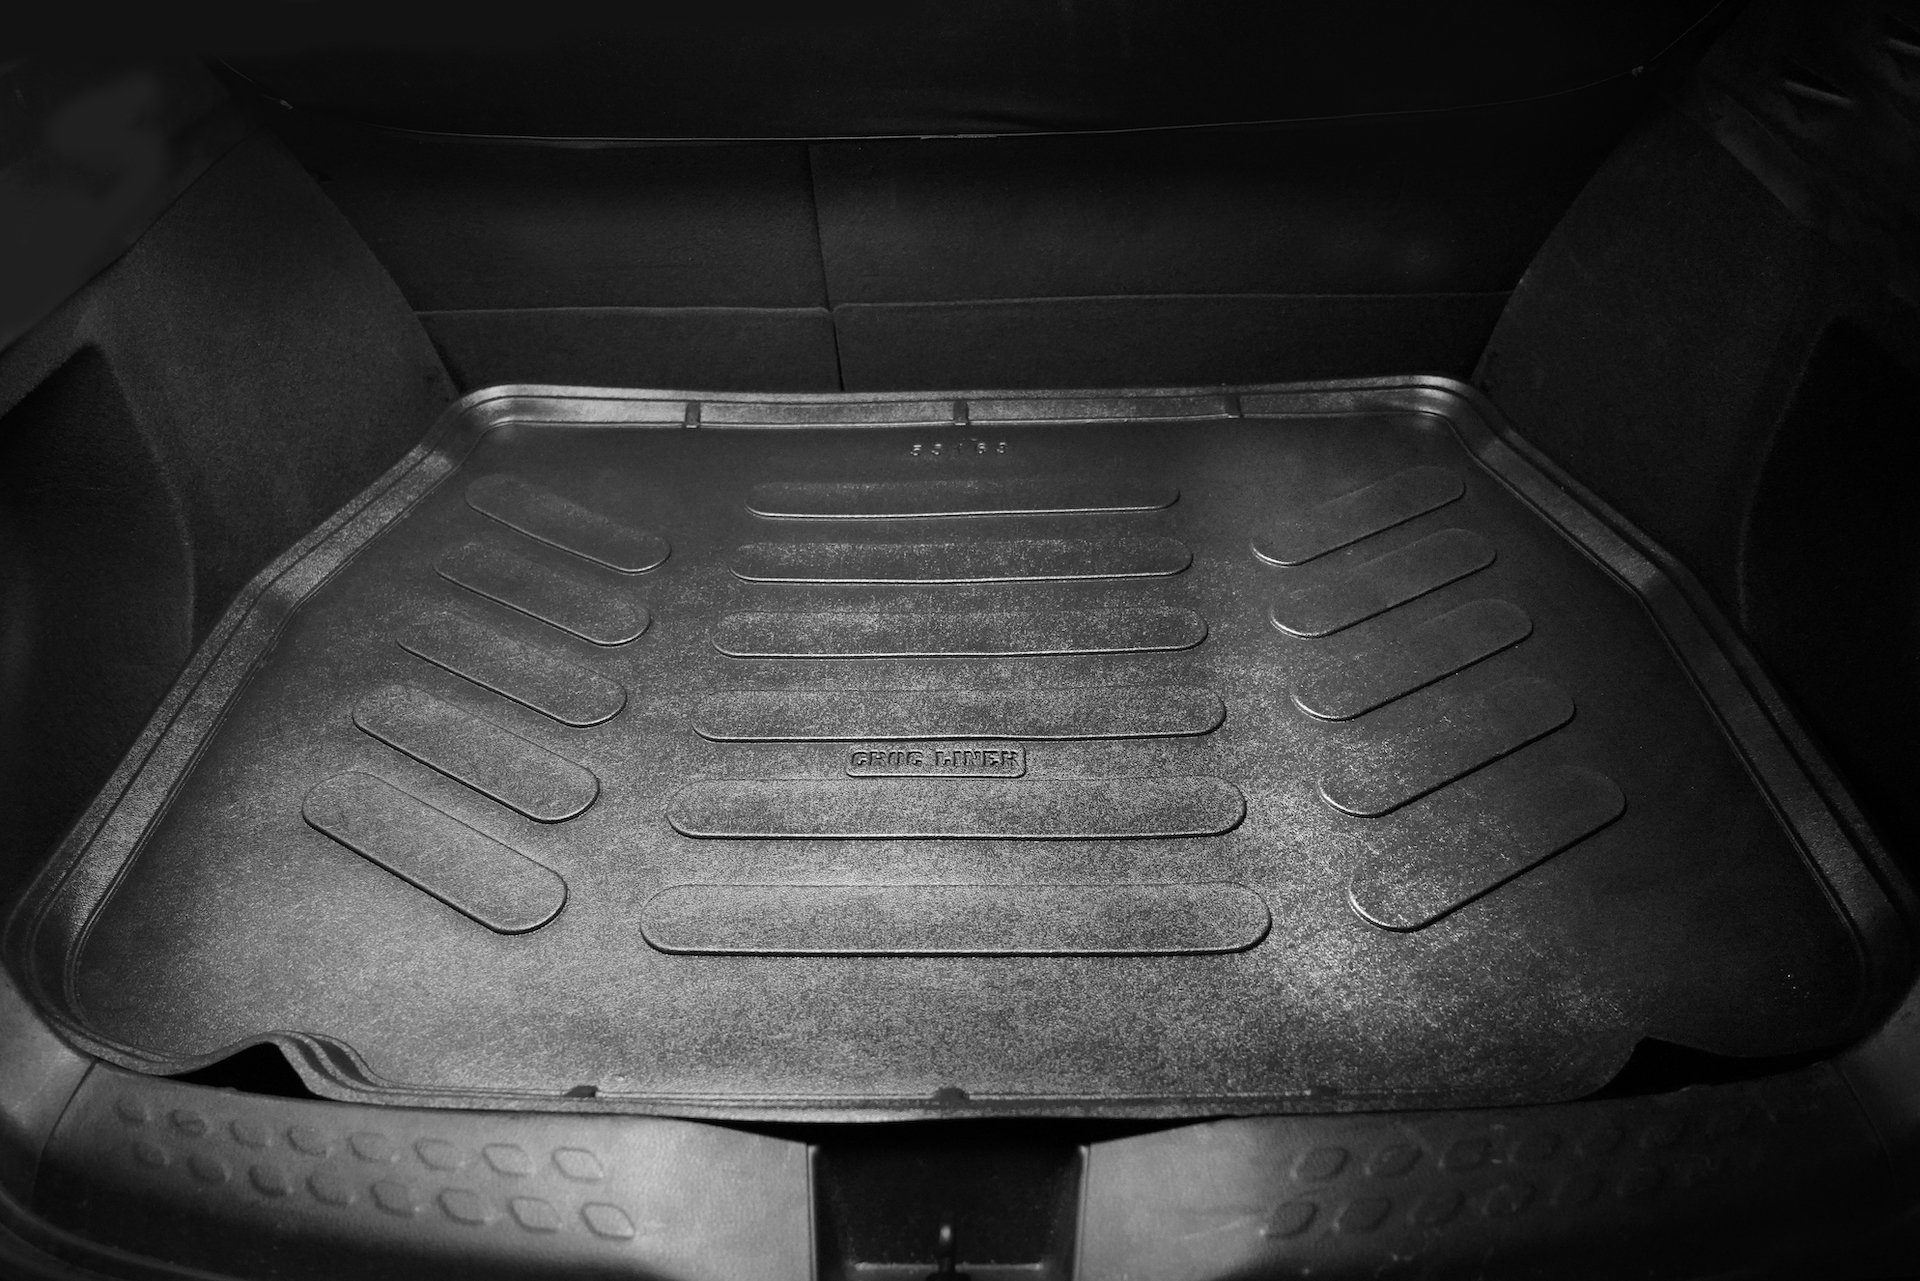 2014 Auto-Fußmatte, Trimak Trimak Kofferraummatte Kofferraumwanne - 2020 Mercedes 1.Gen GLA